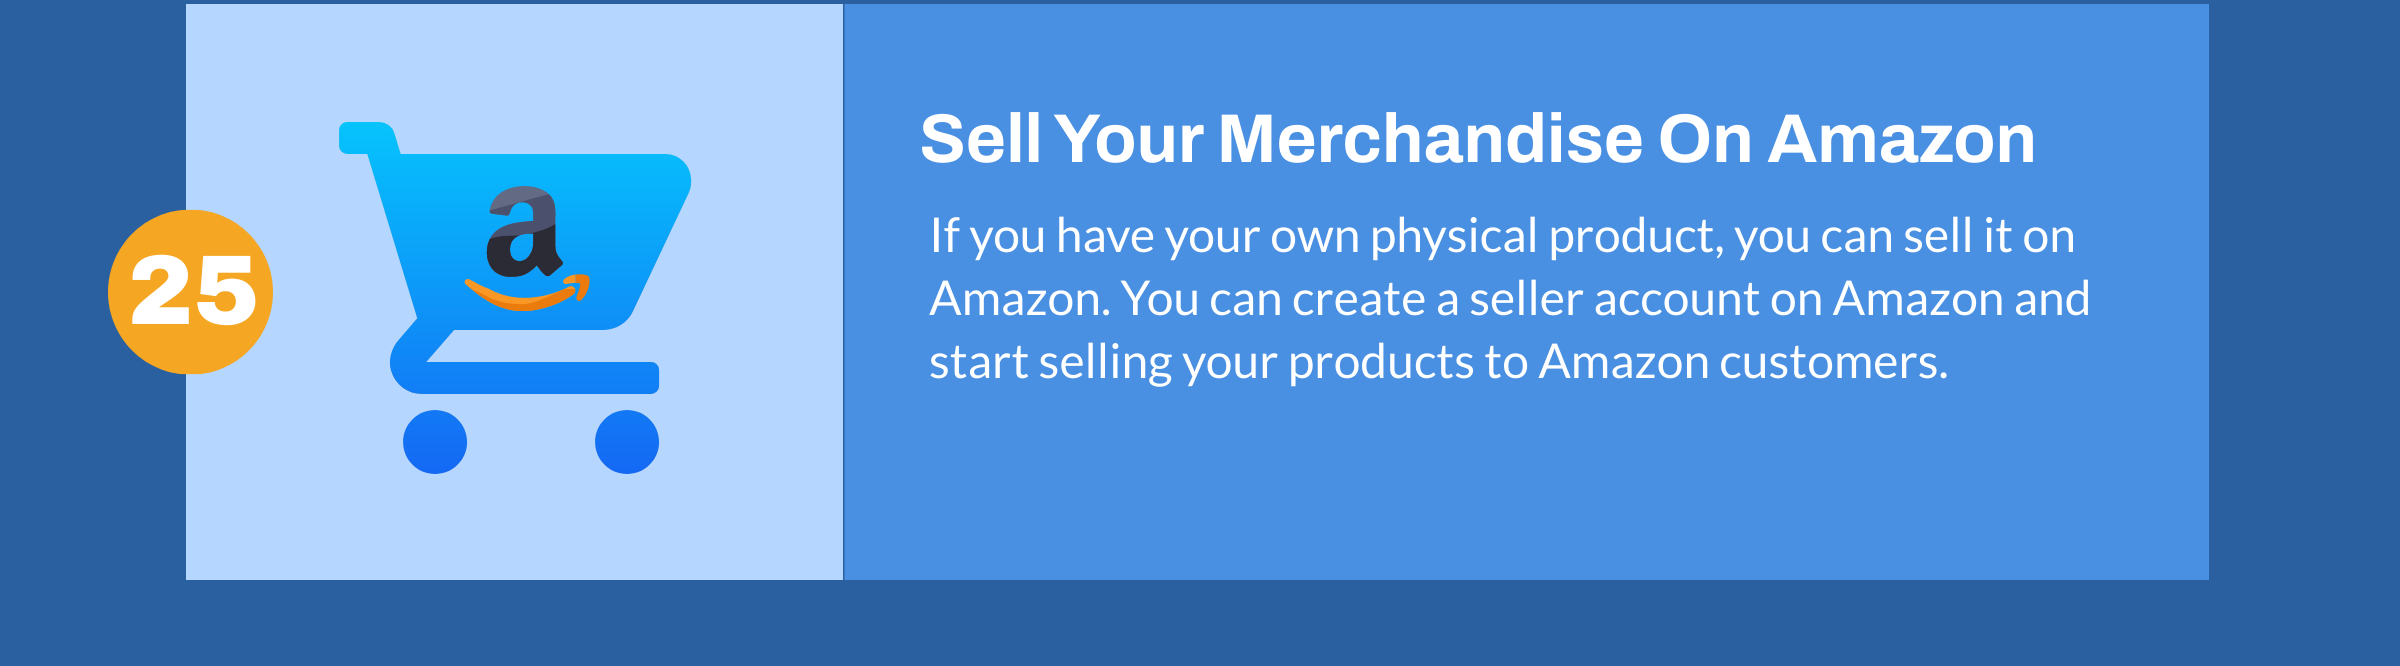 Verkaufen Sie Waren auf Amazon